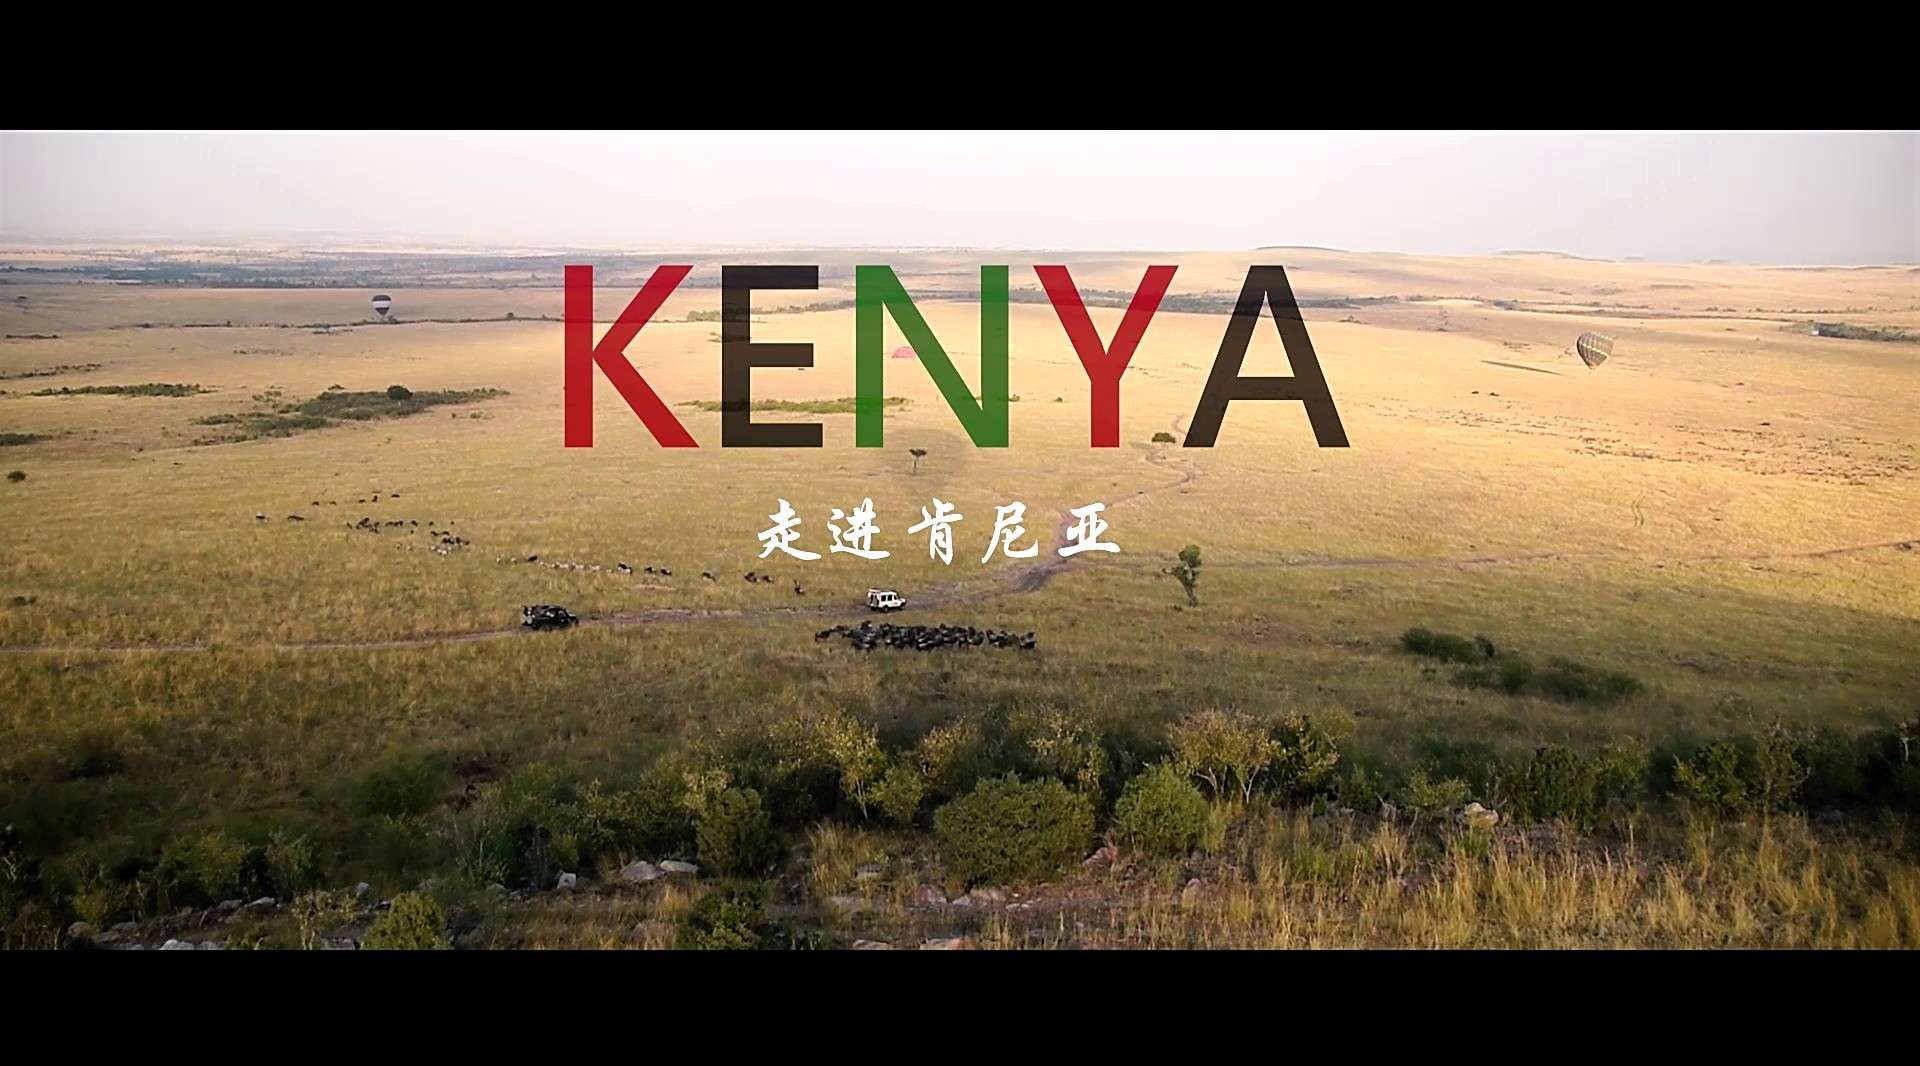 《走进肯尼亚》旅行纪录片 2017年8月作品